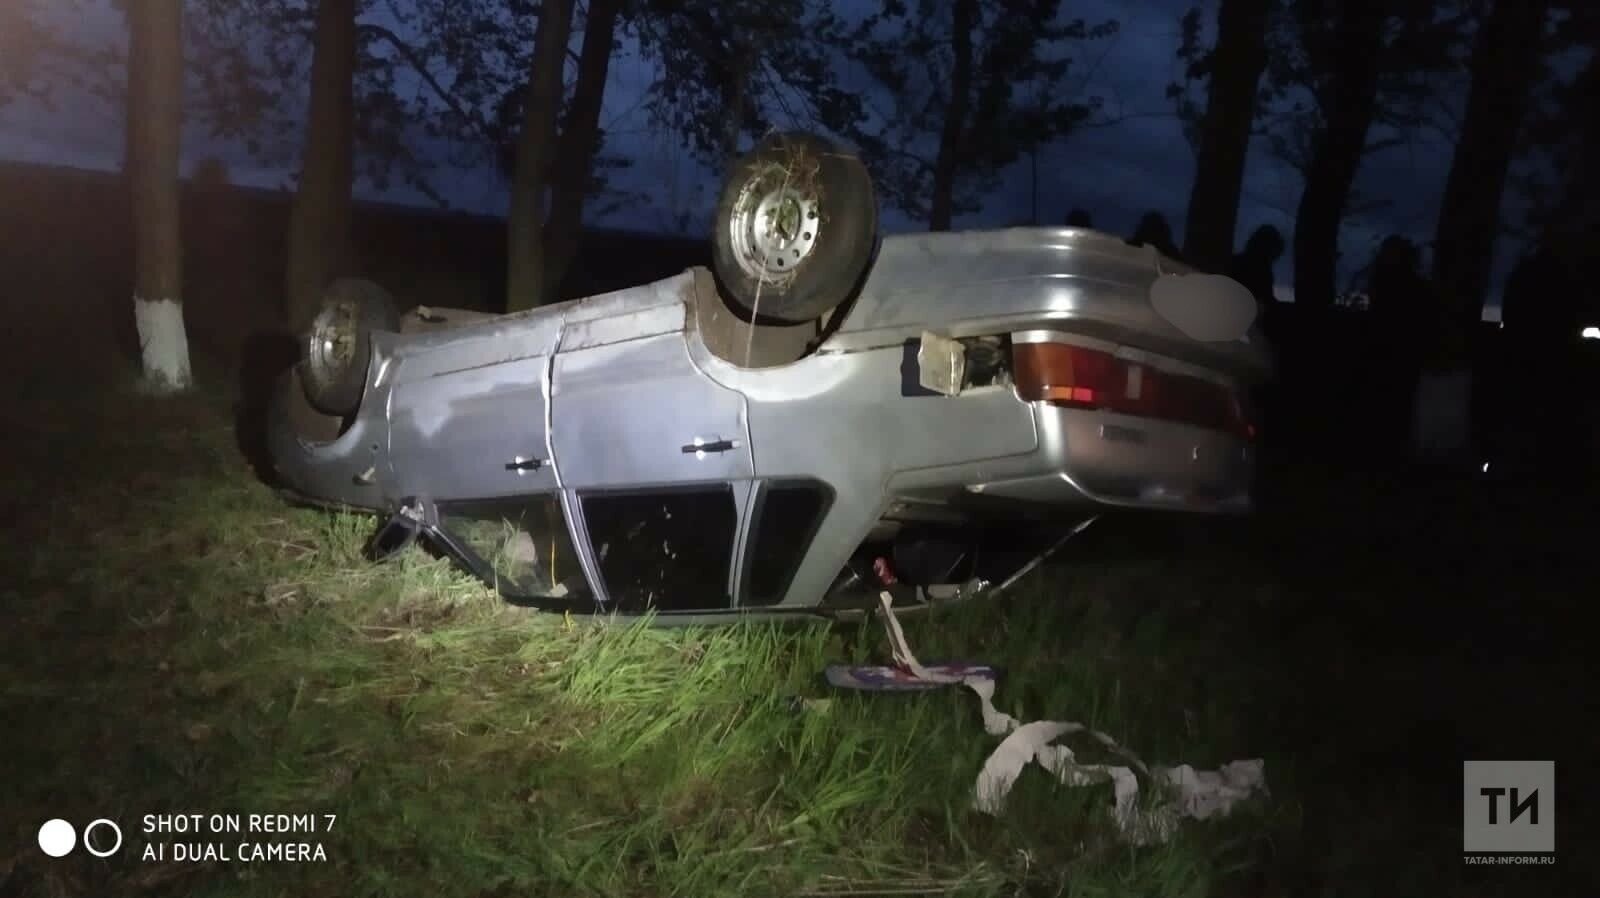 В Татарстане водителя насмерть придавило автомобилем